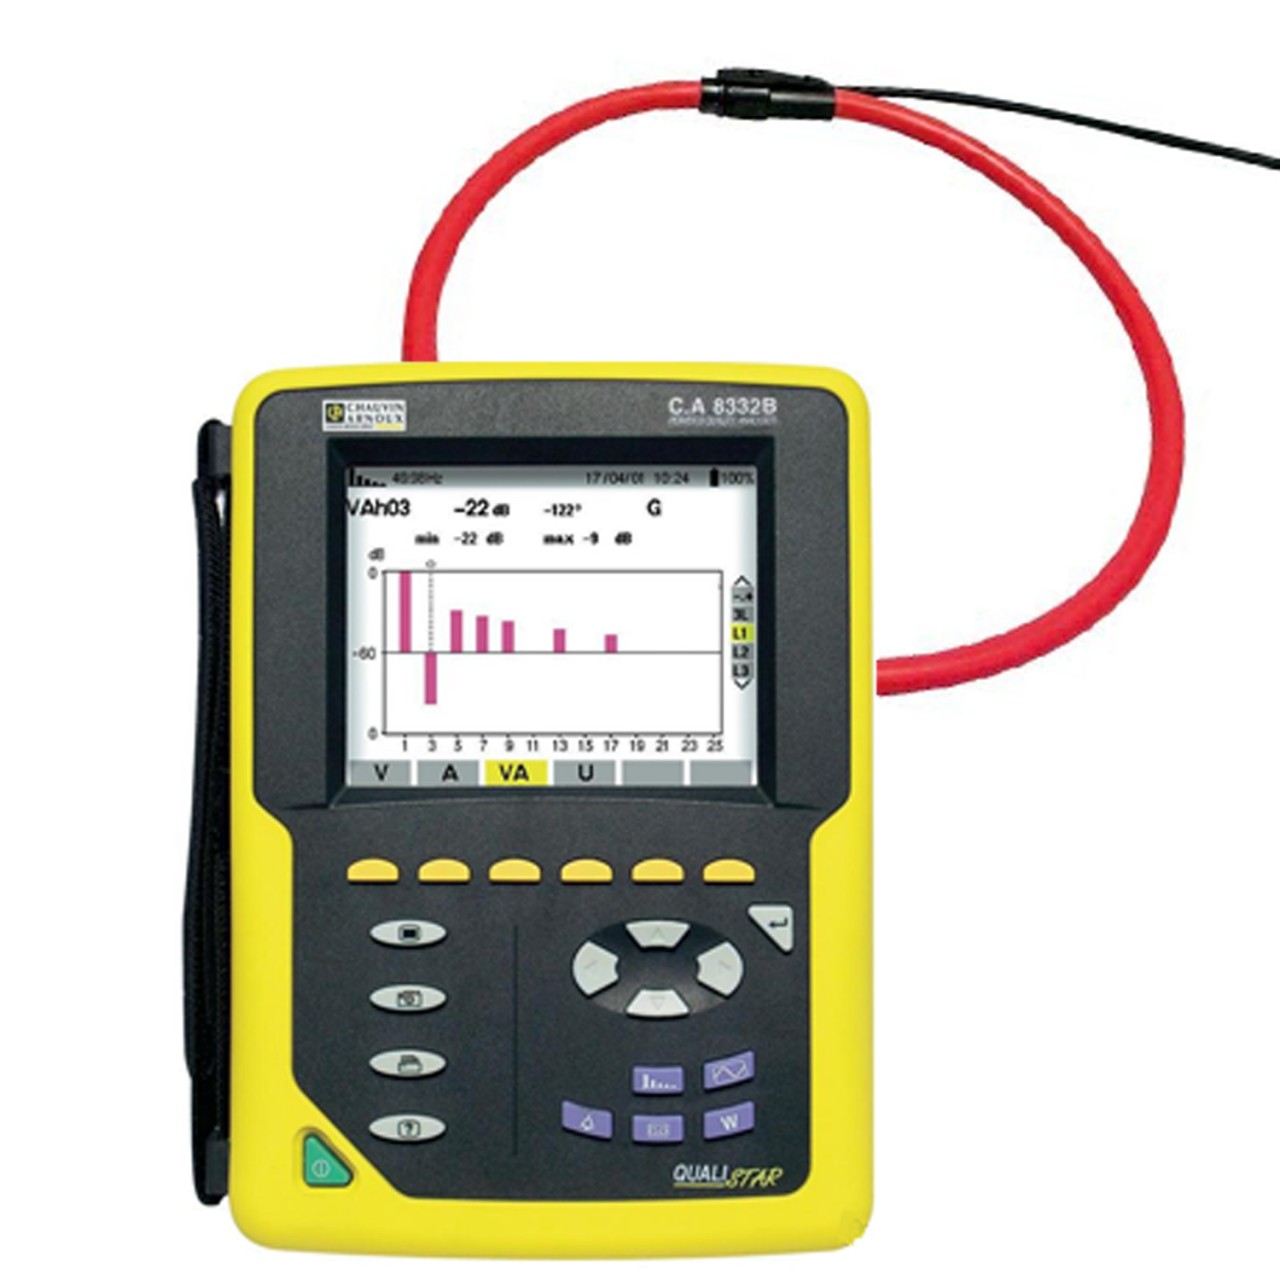 C.A-8332B Анализатор параметров электрических сетей с комплектом измерительных клещей AMPFLEX 450, Ø 140мм)